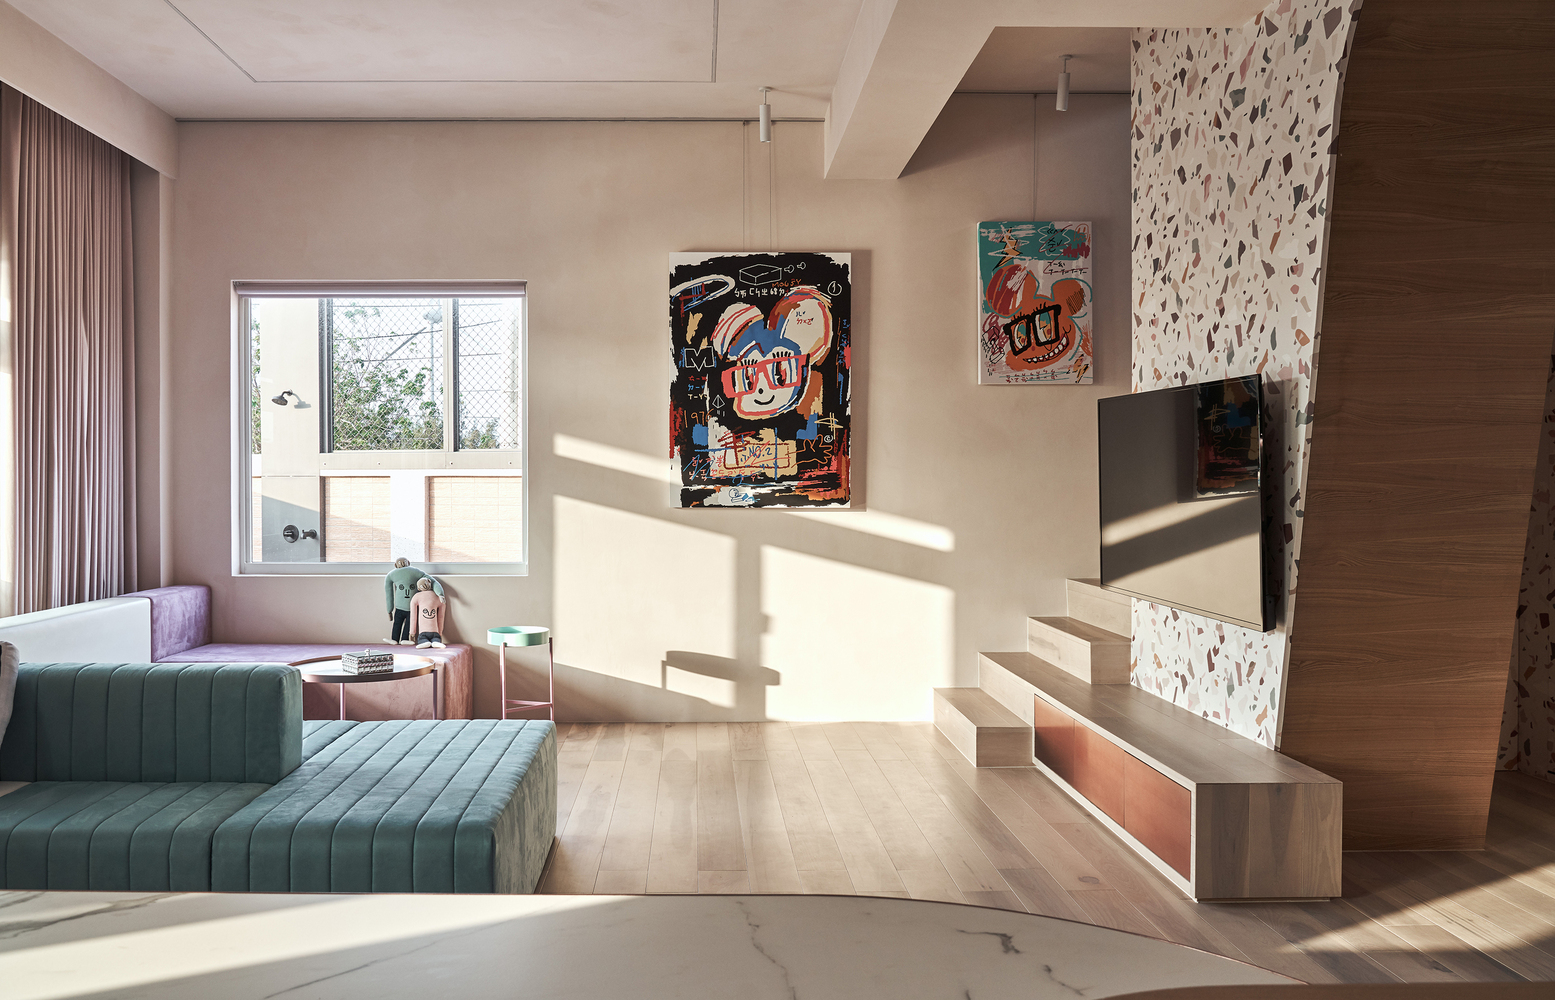 Phòng khách với sofa thiết kế kiểu module nhiều màu sắc tím, trắng, hồng, xanh nổi bật. Đối diện là tivi treo trên bức tường ốp gạch terrazzo cho cái nhìn tươi tắn.